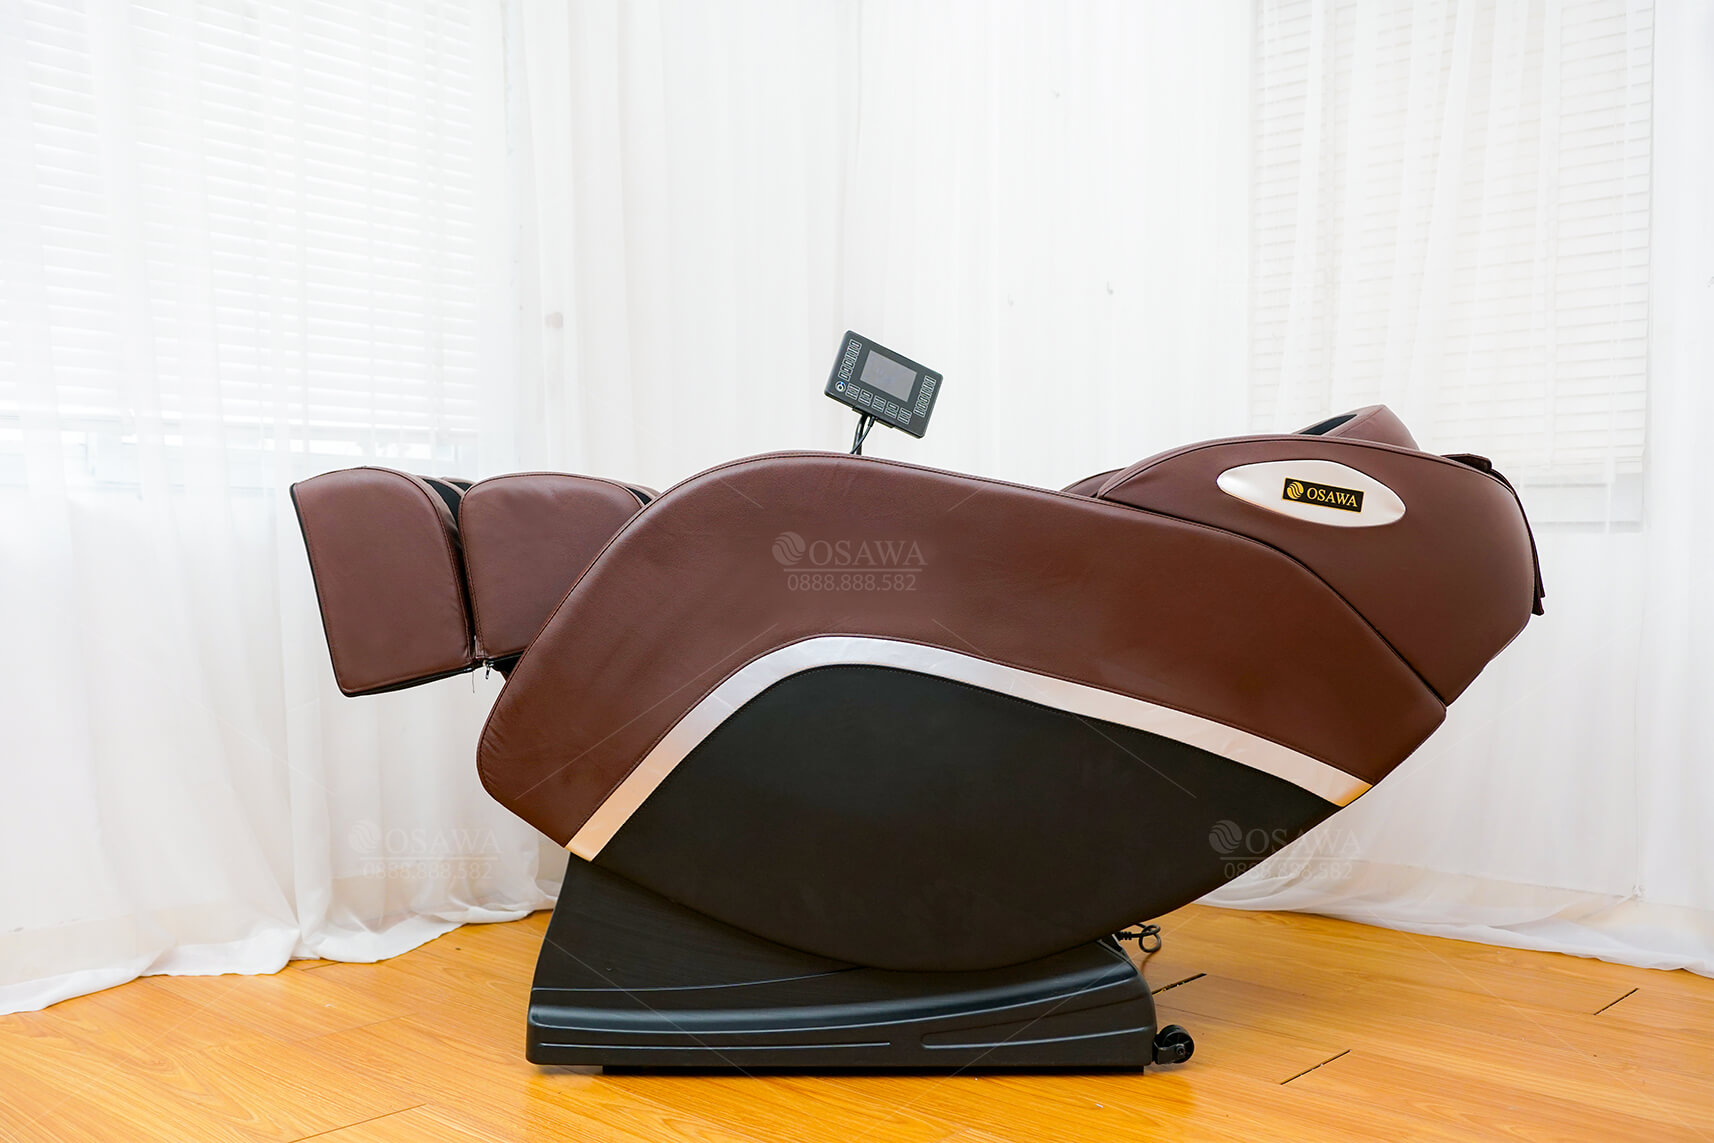 Ghế Massage Osawa OS - 200 Plus - ghế massage giá rẻ cho mọi gia đình